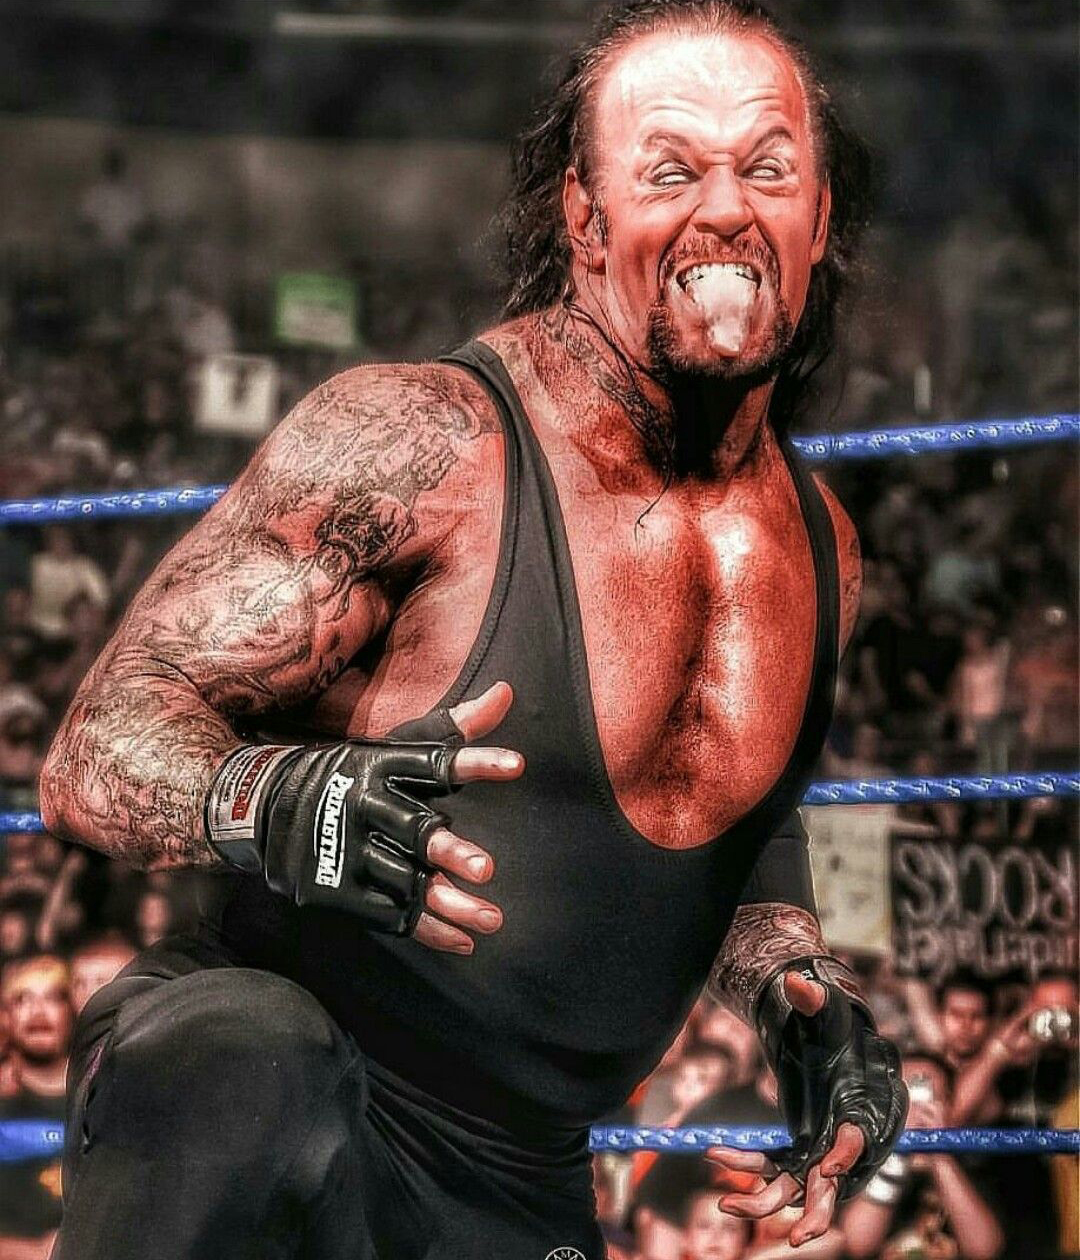 Catch The Undertaker prend sa retraite après 30 ans de carrière